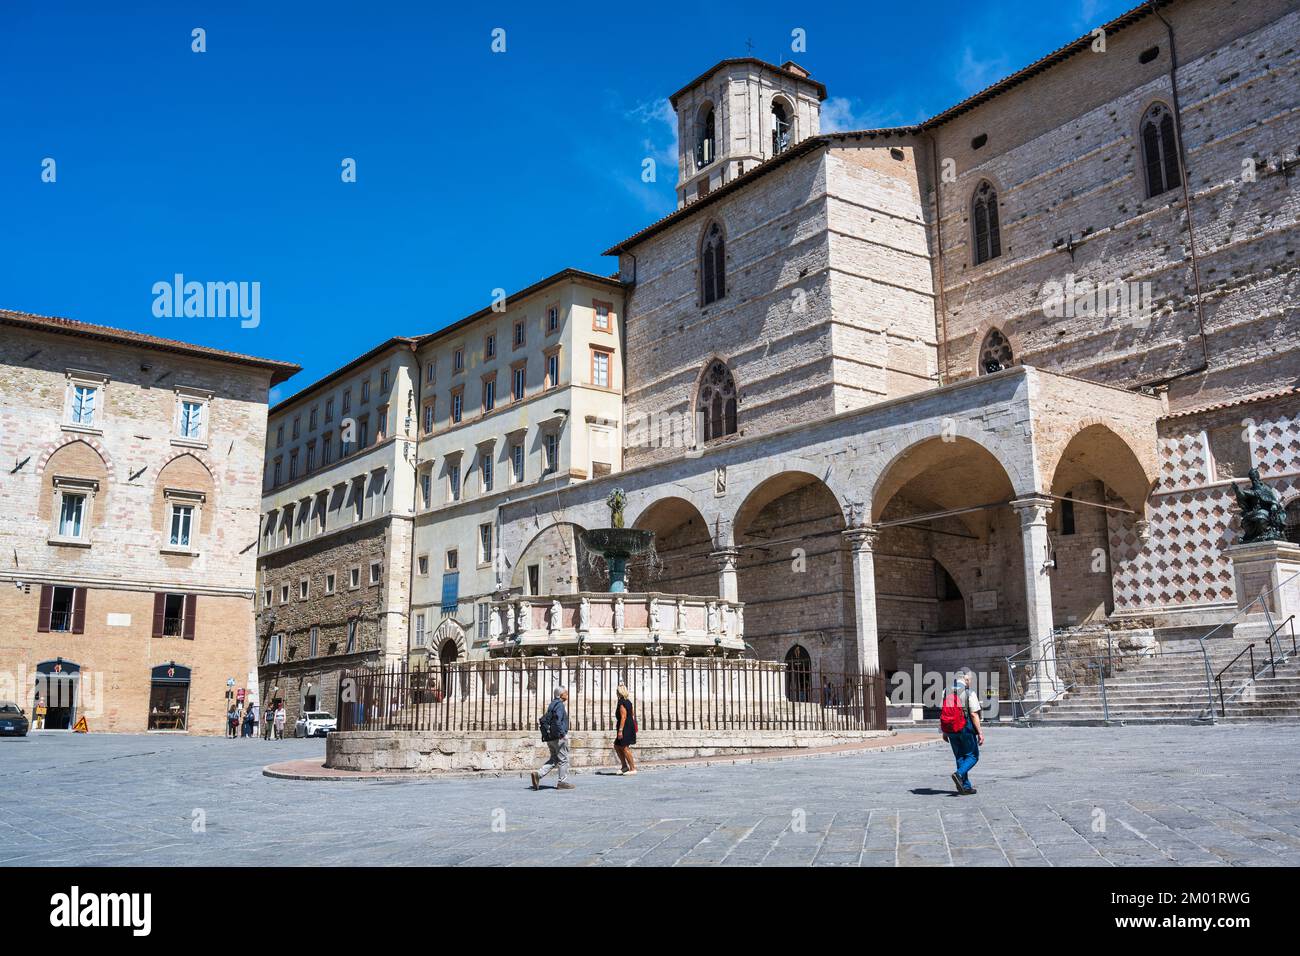 Fontana maggiore medievale di fronte al Duomo di Perugia (Cattedrale di San Lorenzo) in Piazza IV Novembre a Perugia, Umbria, Italia Foto Stock